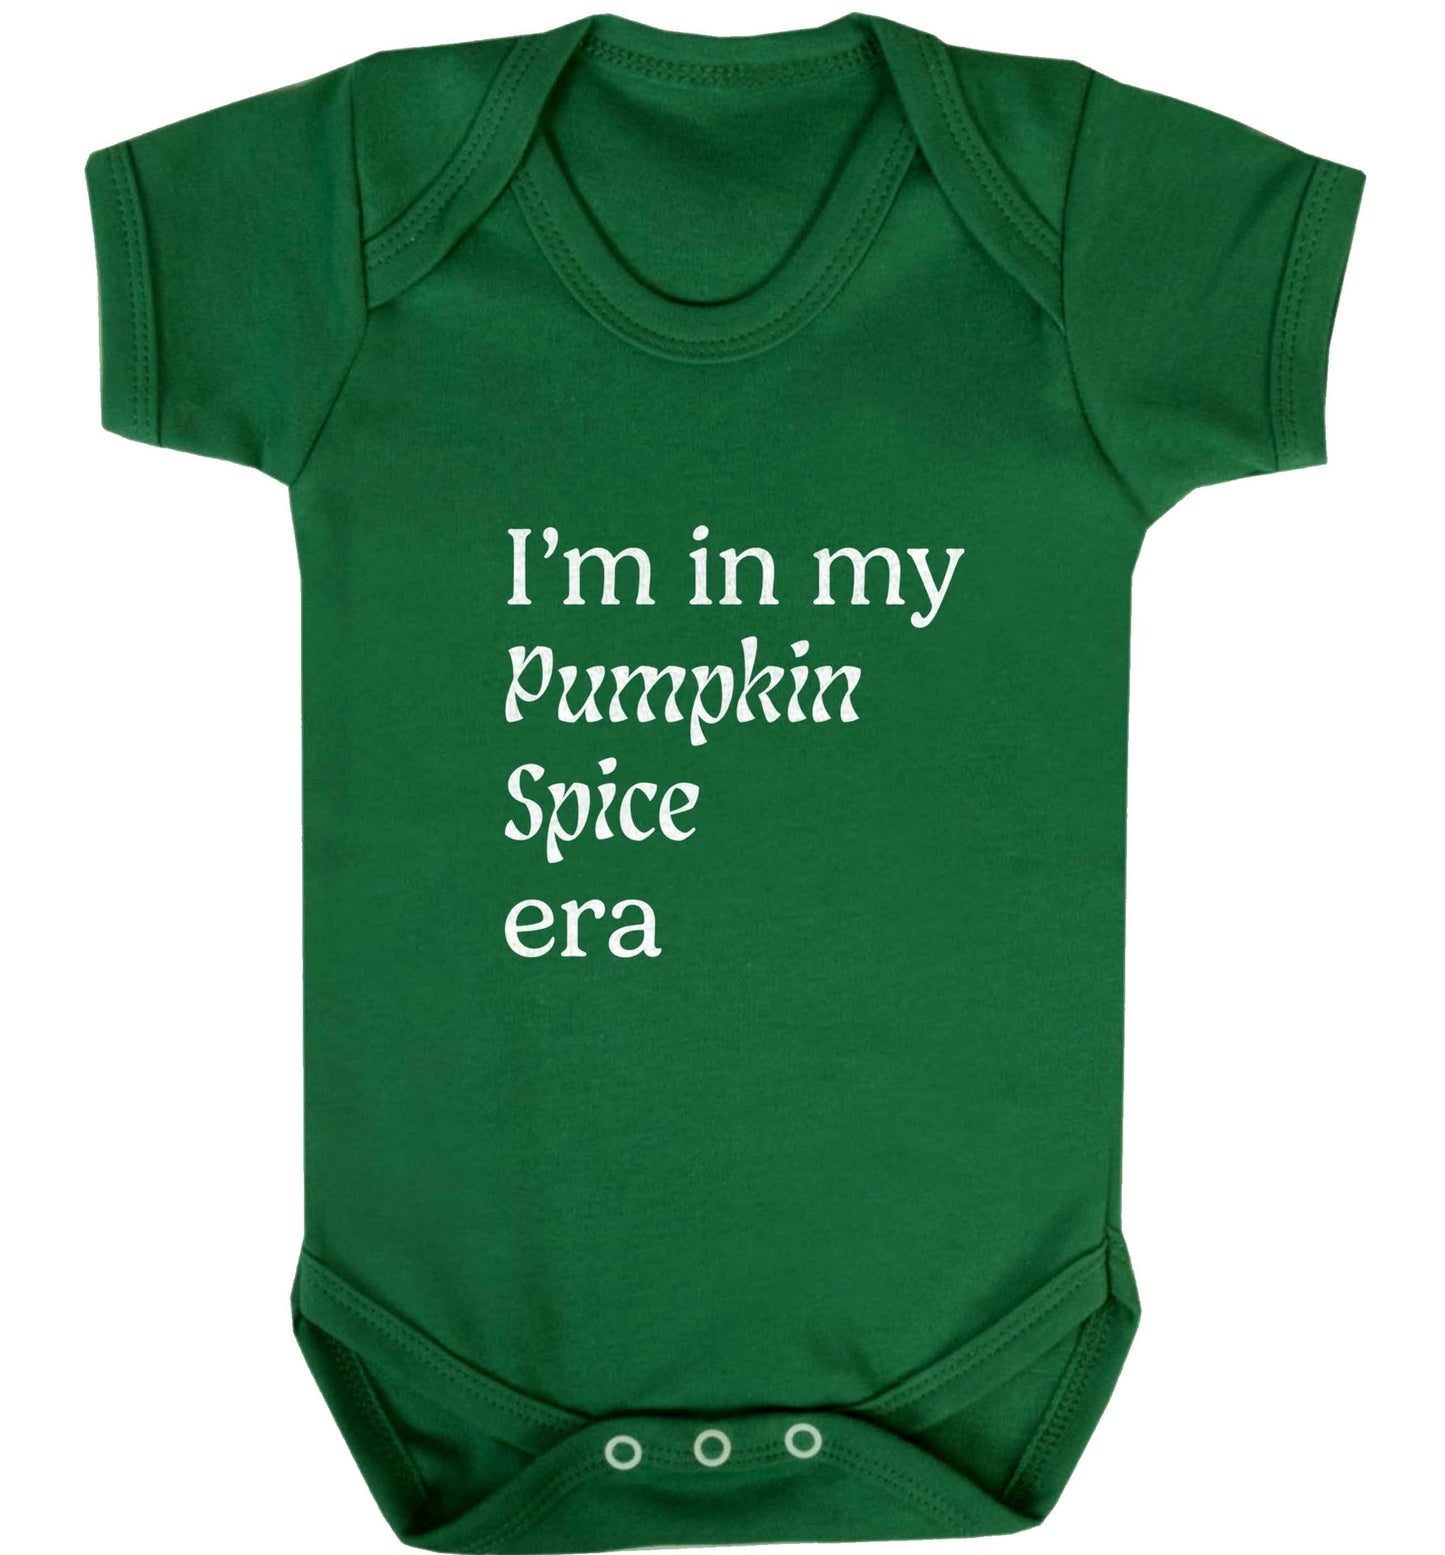 I'm in my pumpkin spice era Kit baby vest green 18-24 months